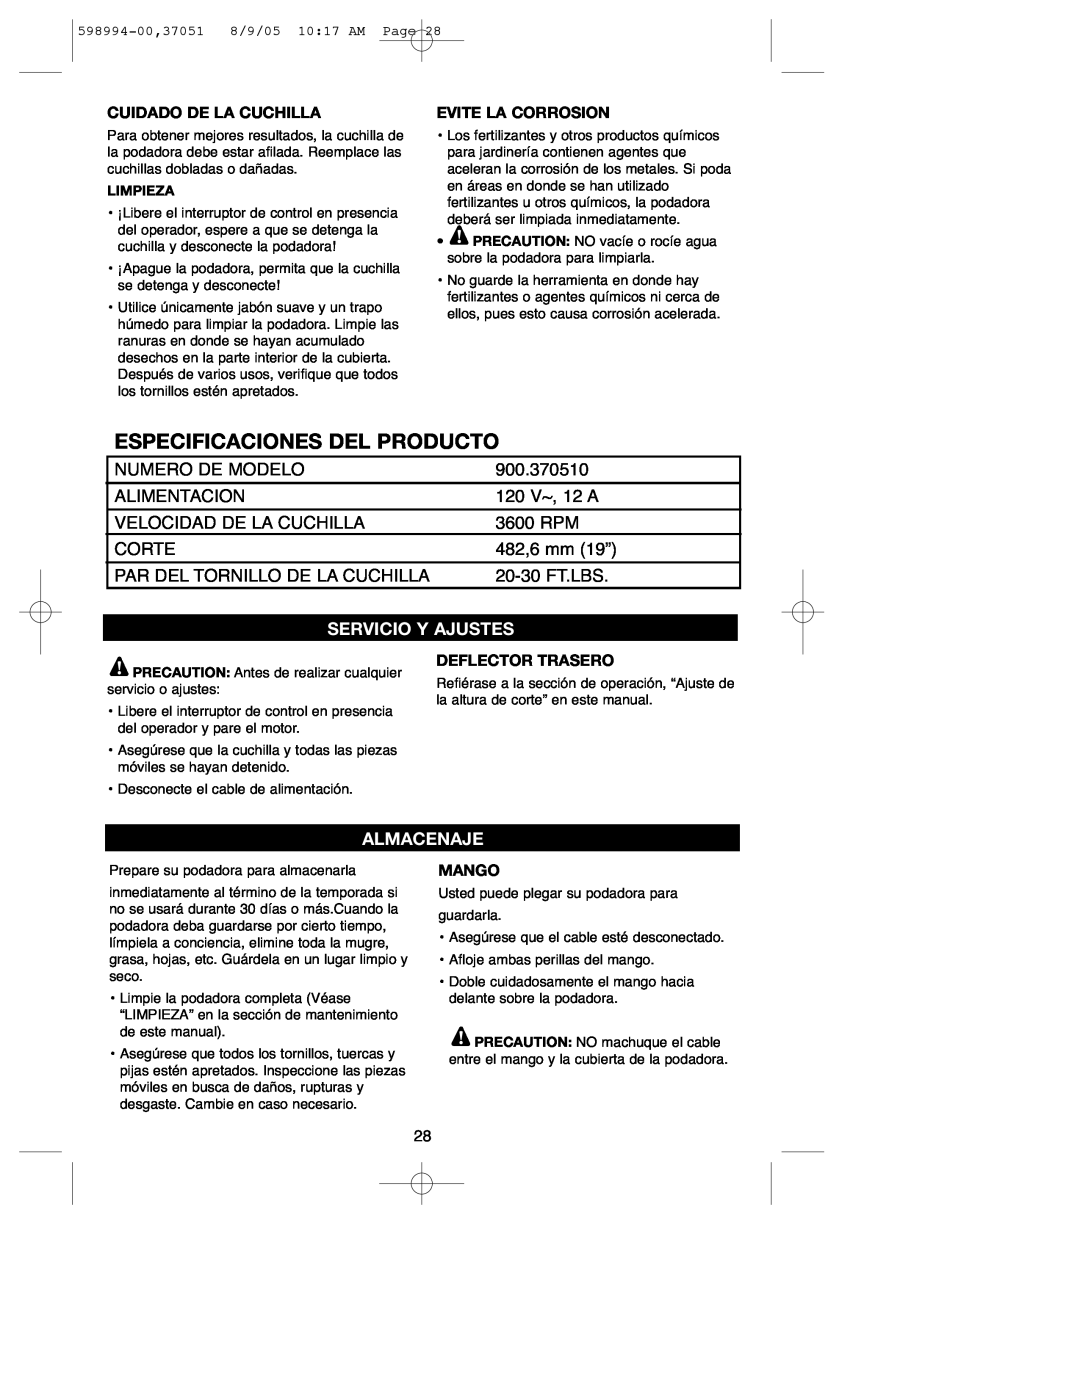 DeWalt 900.37051 instruction manual Especificaciones Del Producto, Servicio Y Ajustes, Almacenaje 